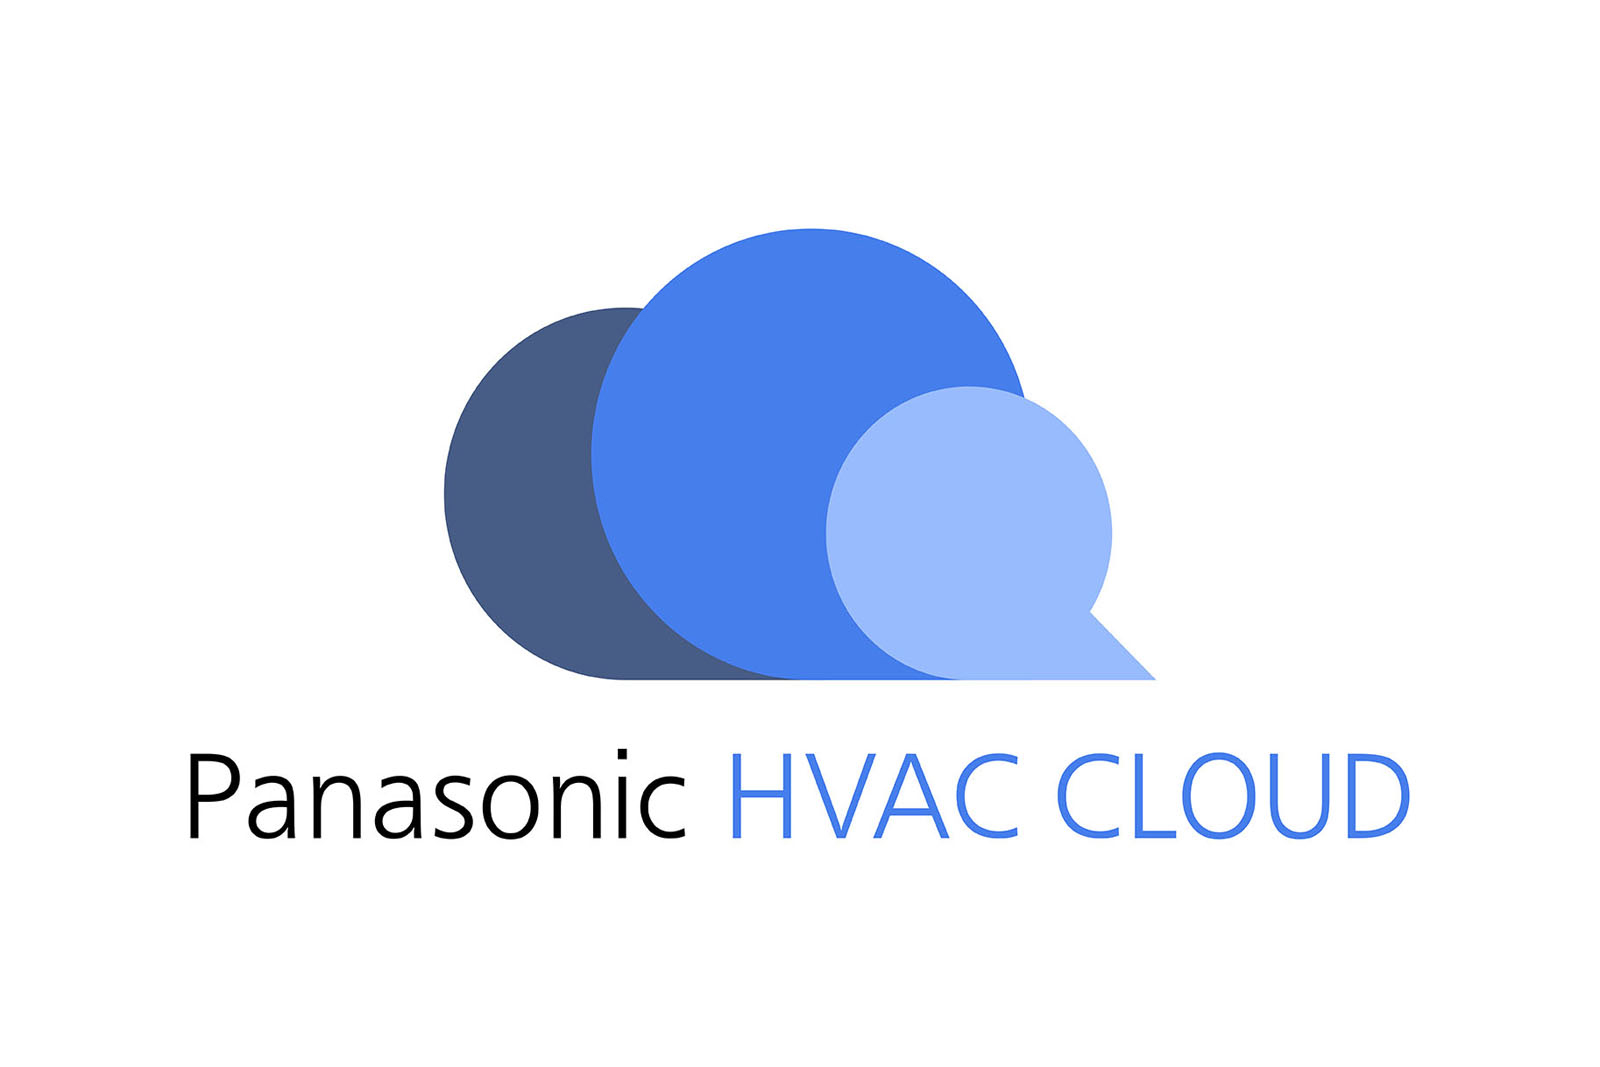 Panasonic HVAC CLOUD ロゴ